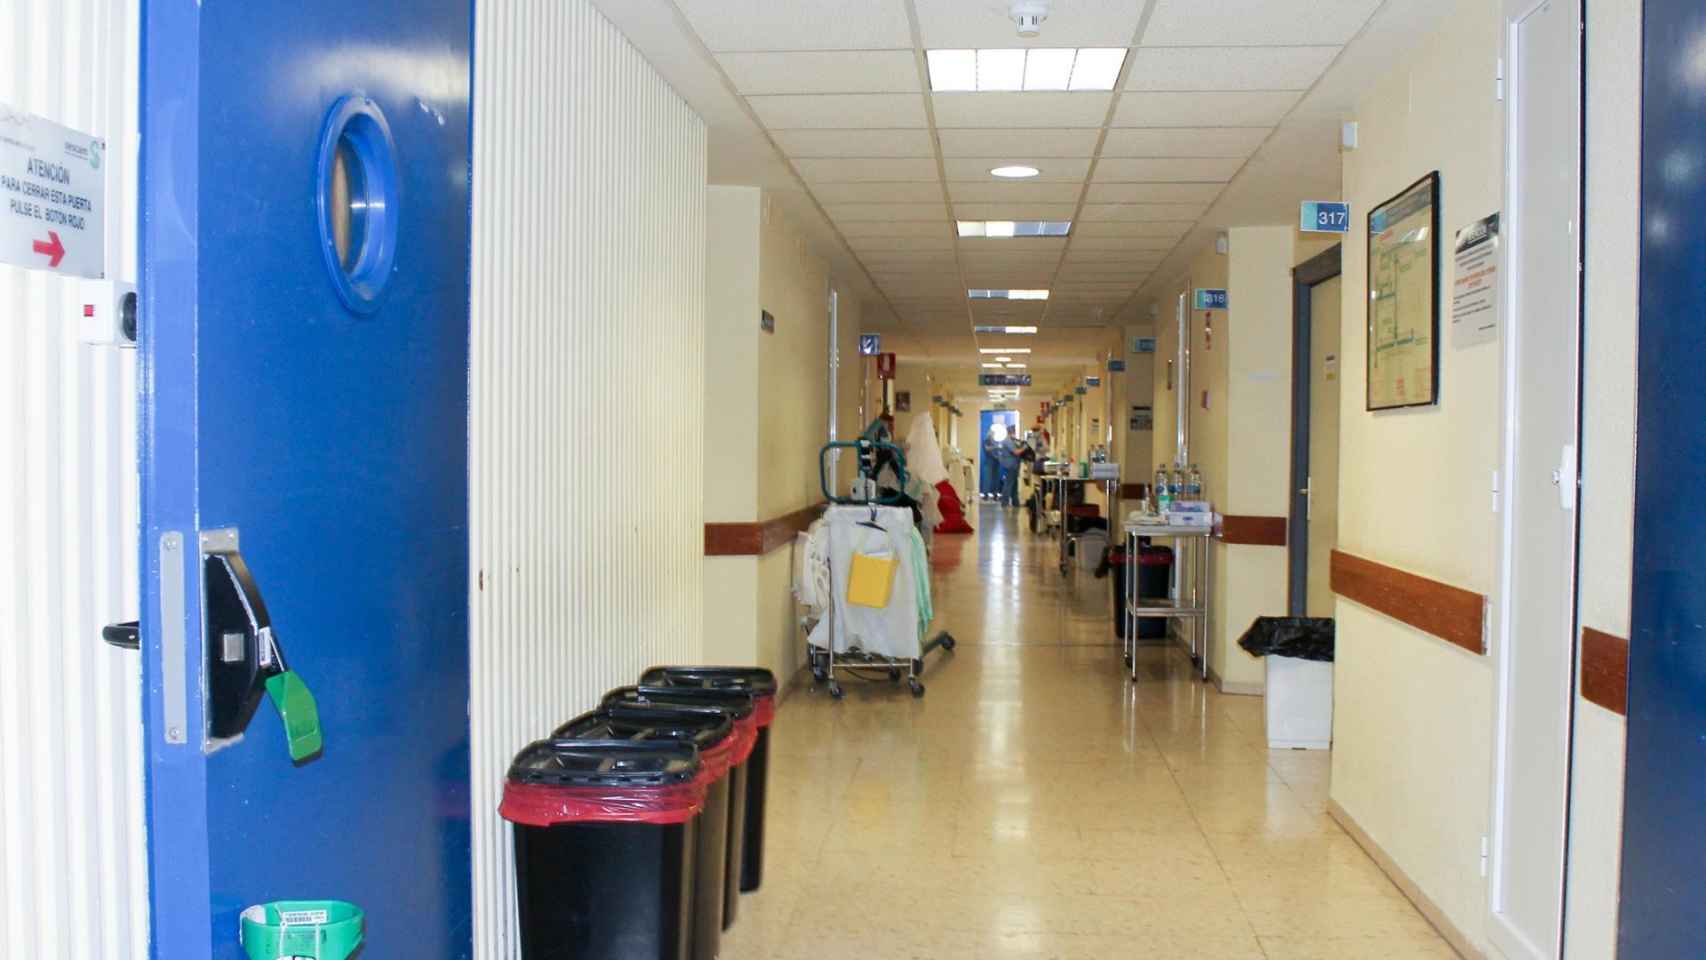 Ningún aborto en centros públicos de Castilla-La Mancha en 2019